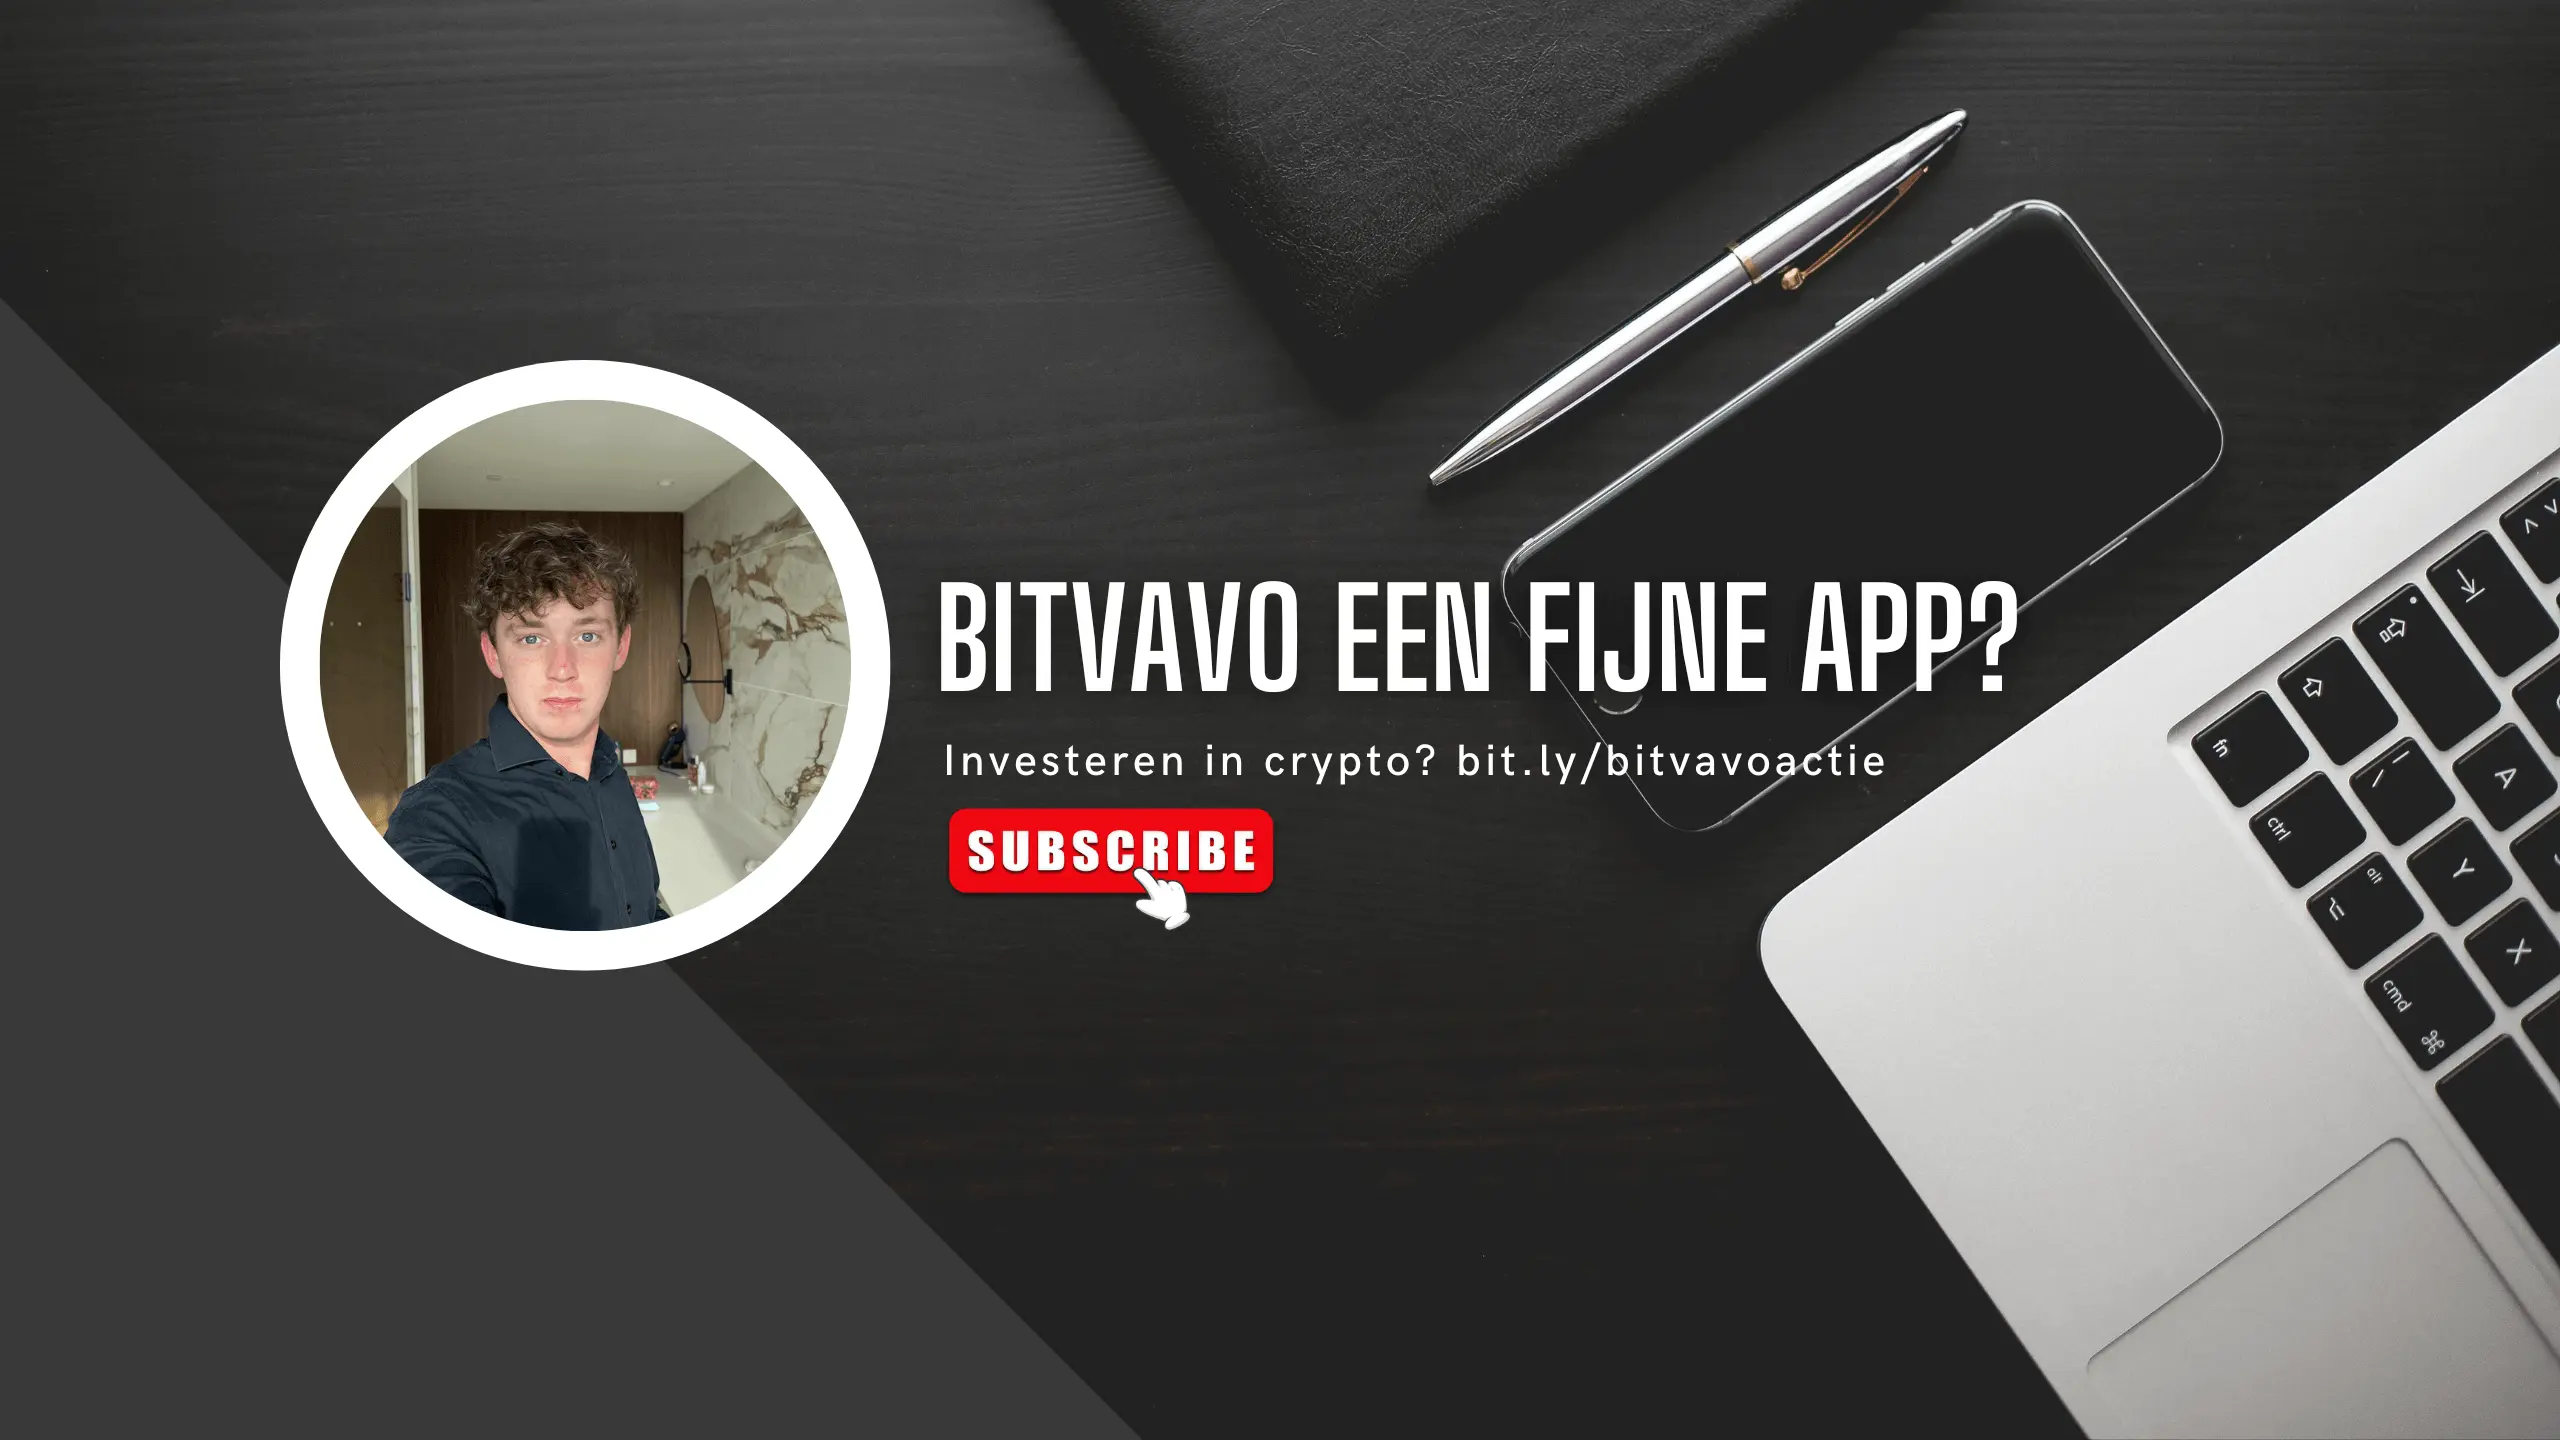 Heeft Bitvao een fijne app?